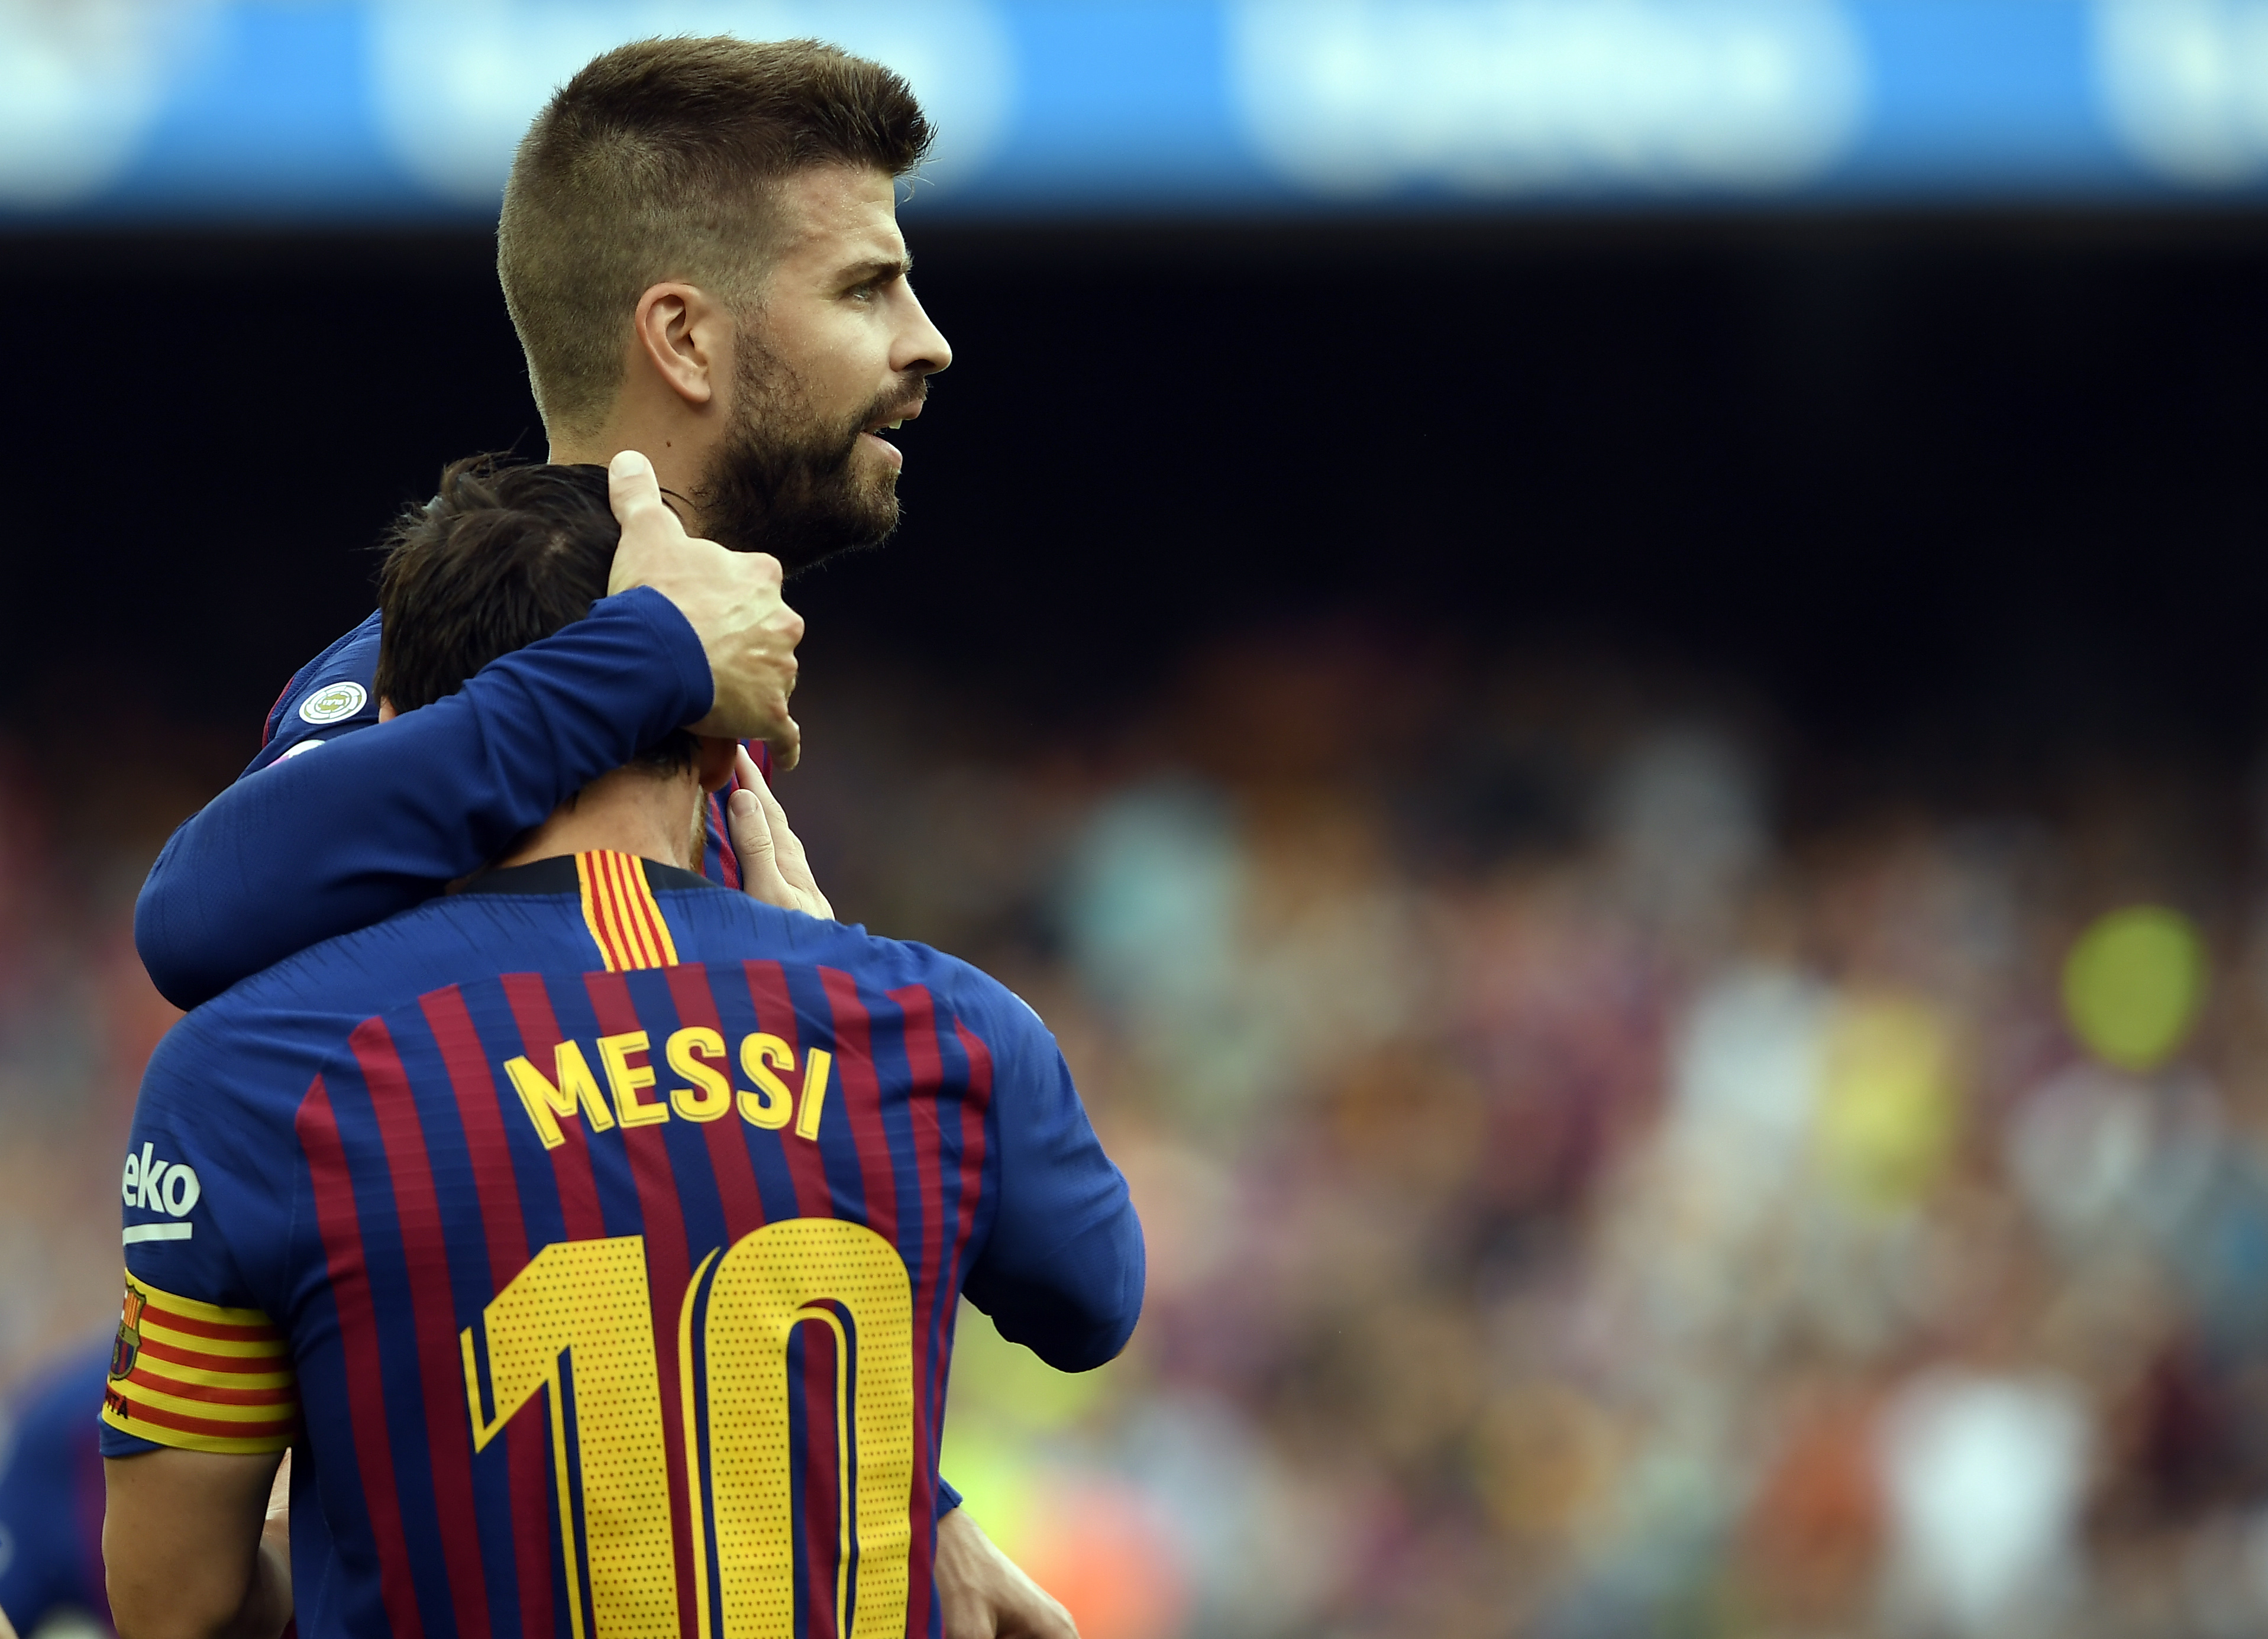 A Barcelona elnöke állítólag felbérelt egy céget, hogy kamuprofilokkal támadják az ellenfeleit, köztük Messit és Piquét is